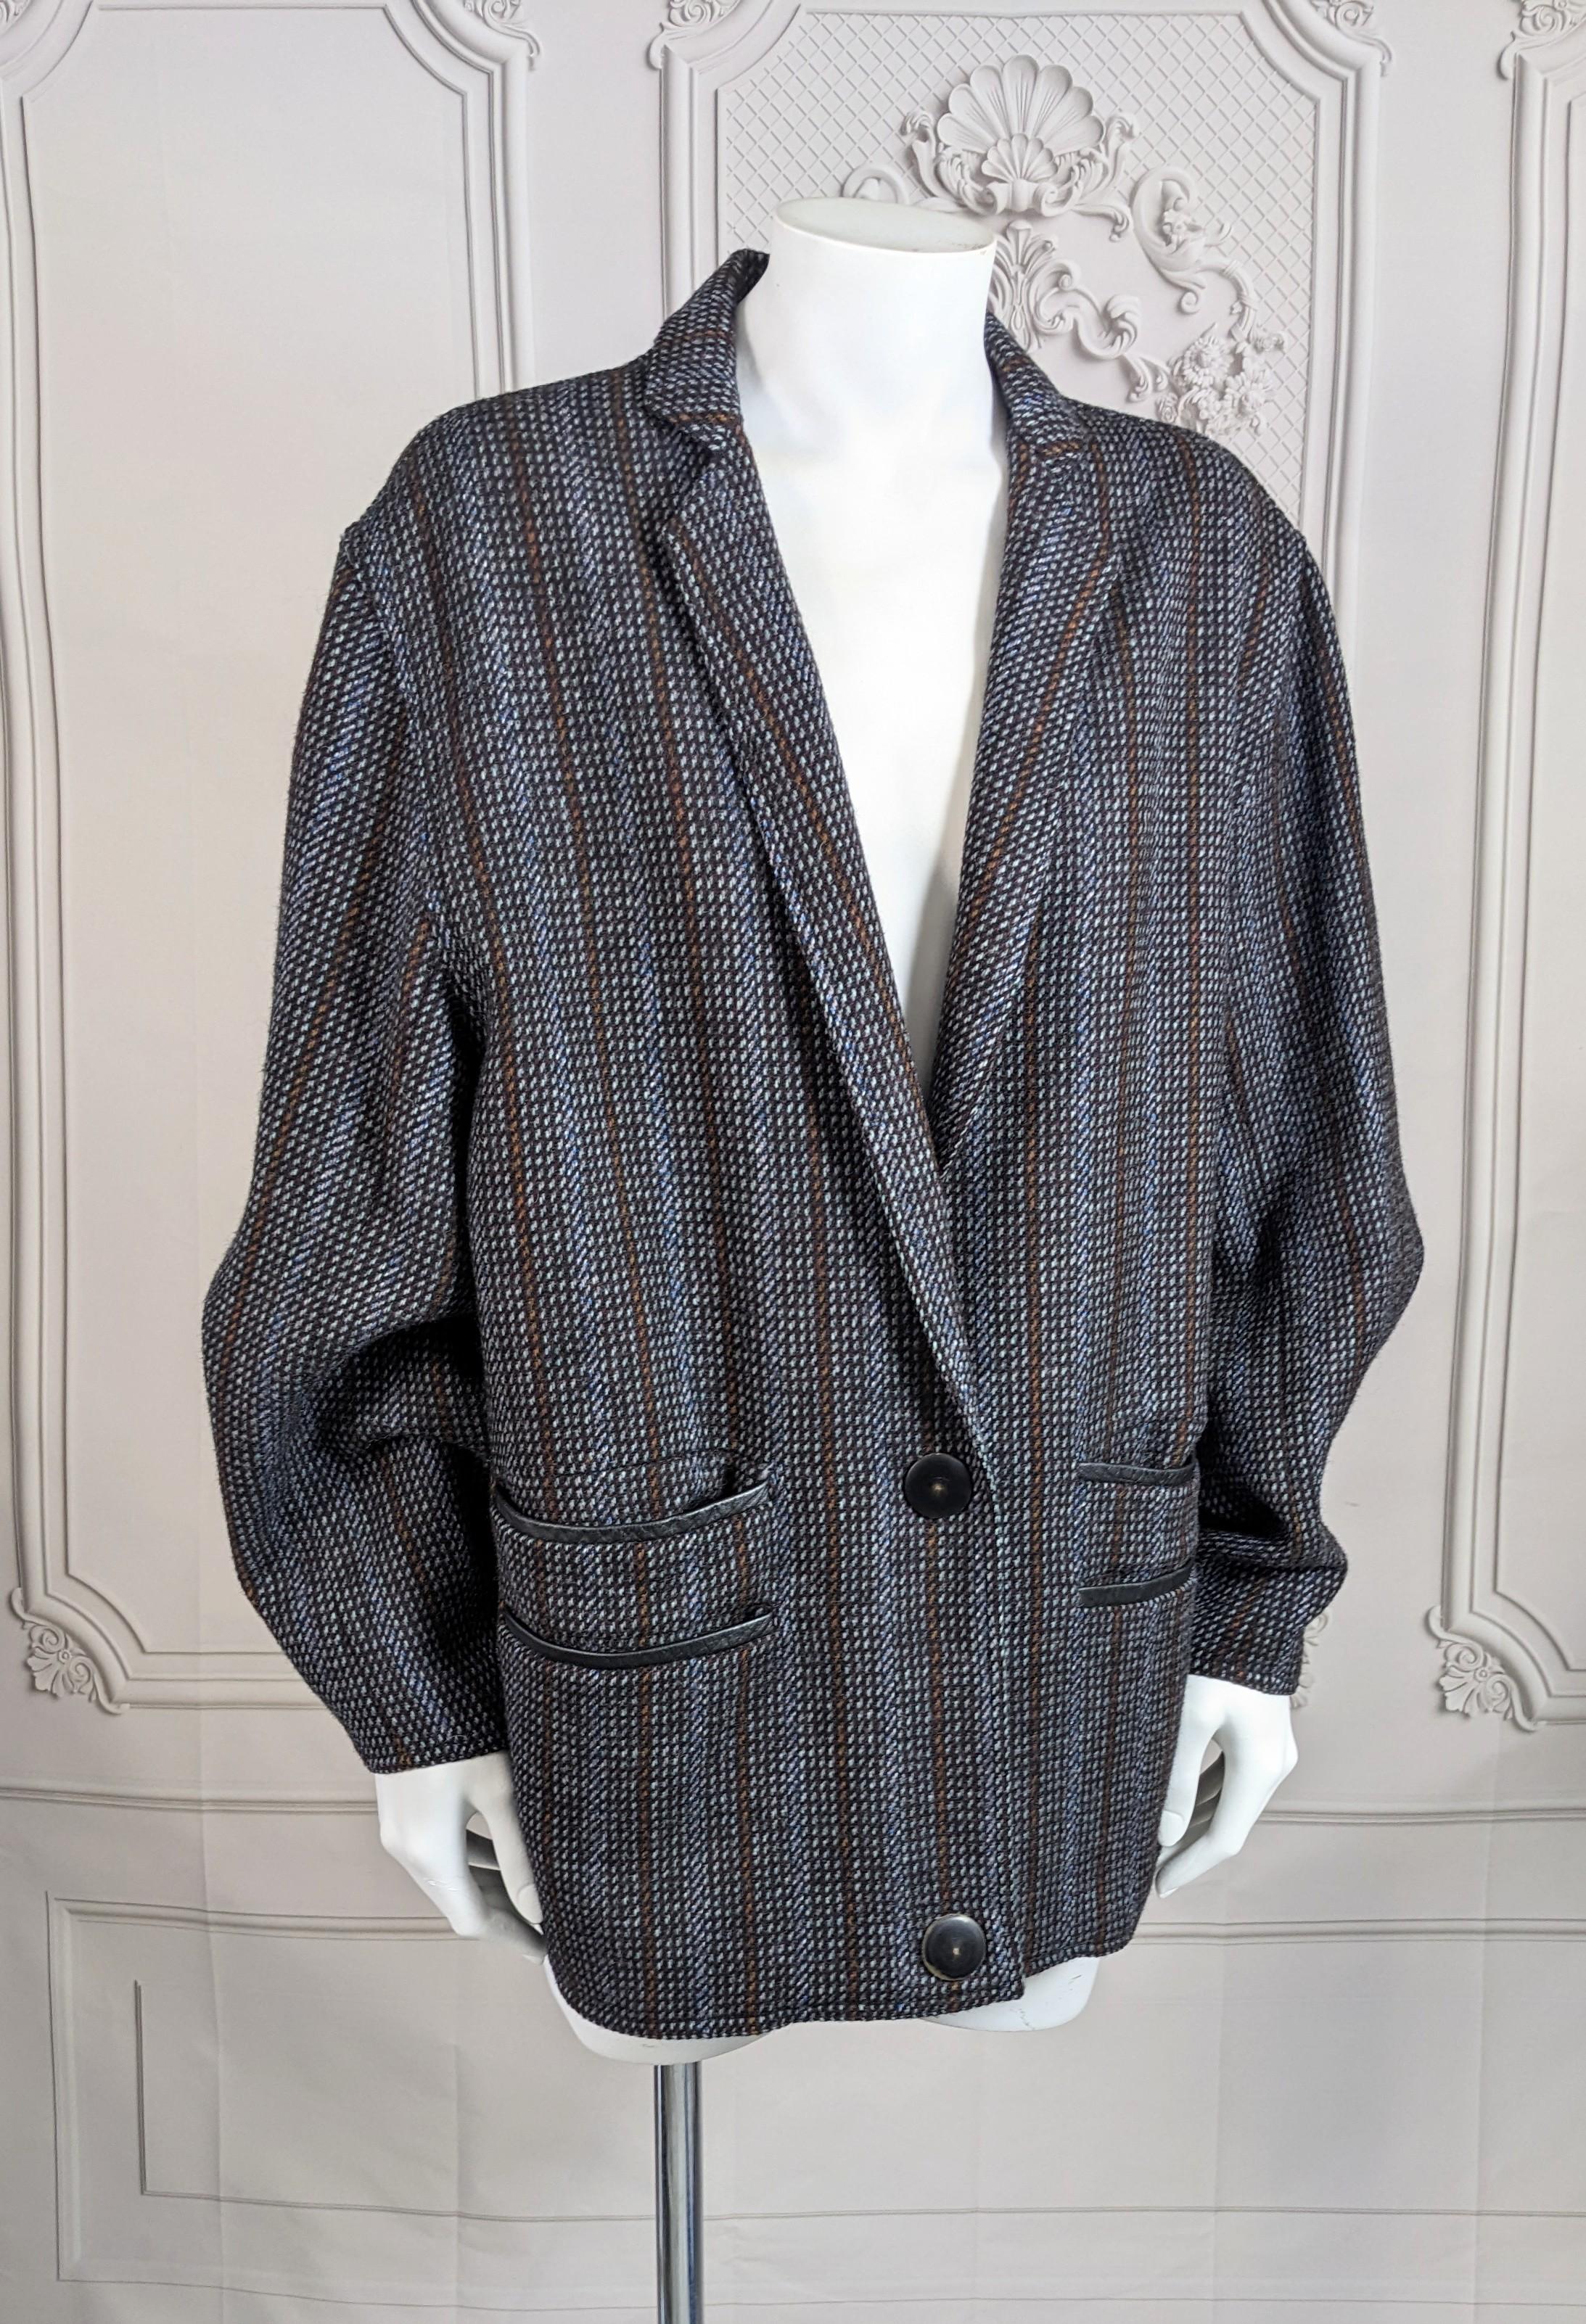 Design/One iconique d'Anne-Marie Beretta datant du milieu des années 1980. Veste en tweed sculpté avec manches angulaires signature et fermeture à bouton-pression en fausse corne. Coupe droite et boxy avec deux séries de poches garnies de cuir.